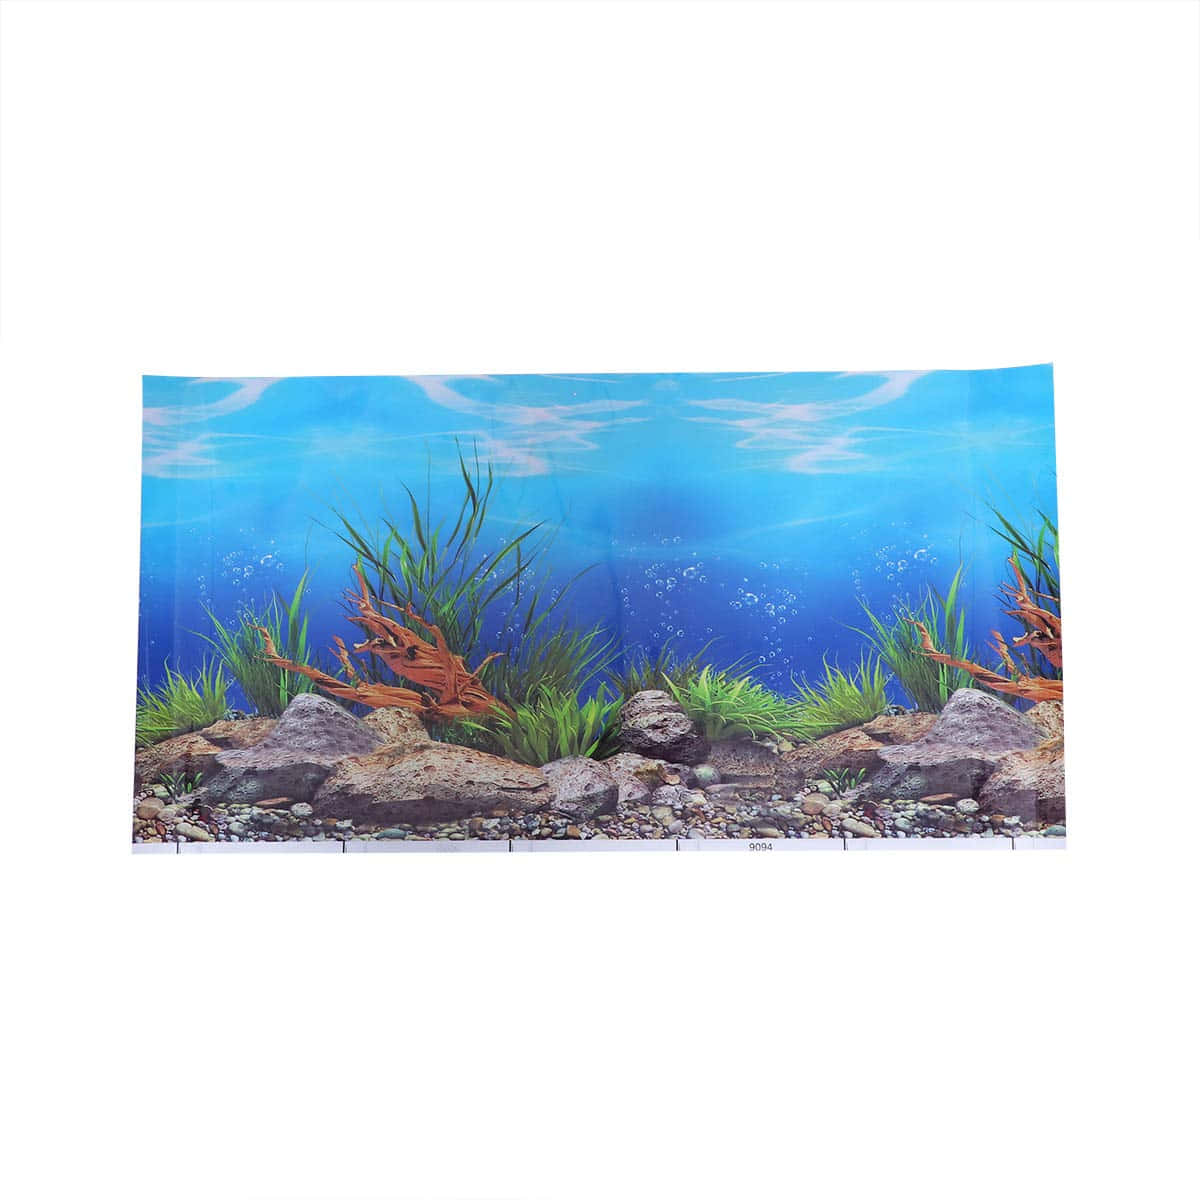 Download Aquarium Fish Tank 1200 X 1200 Wallpaper | Wallpapers.com